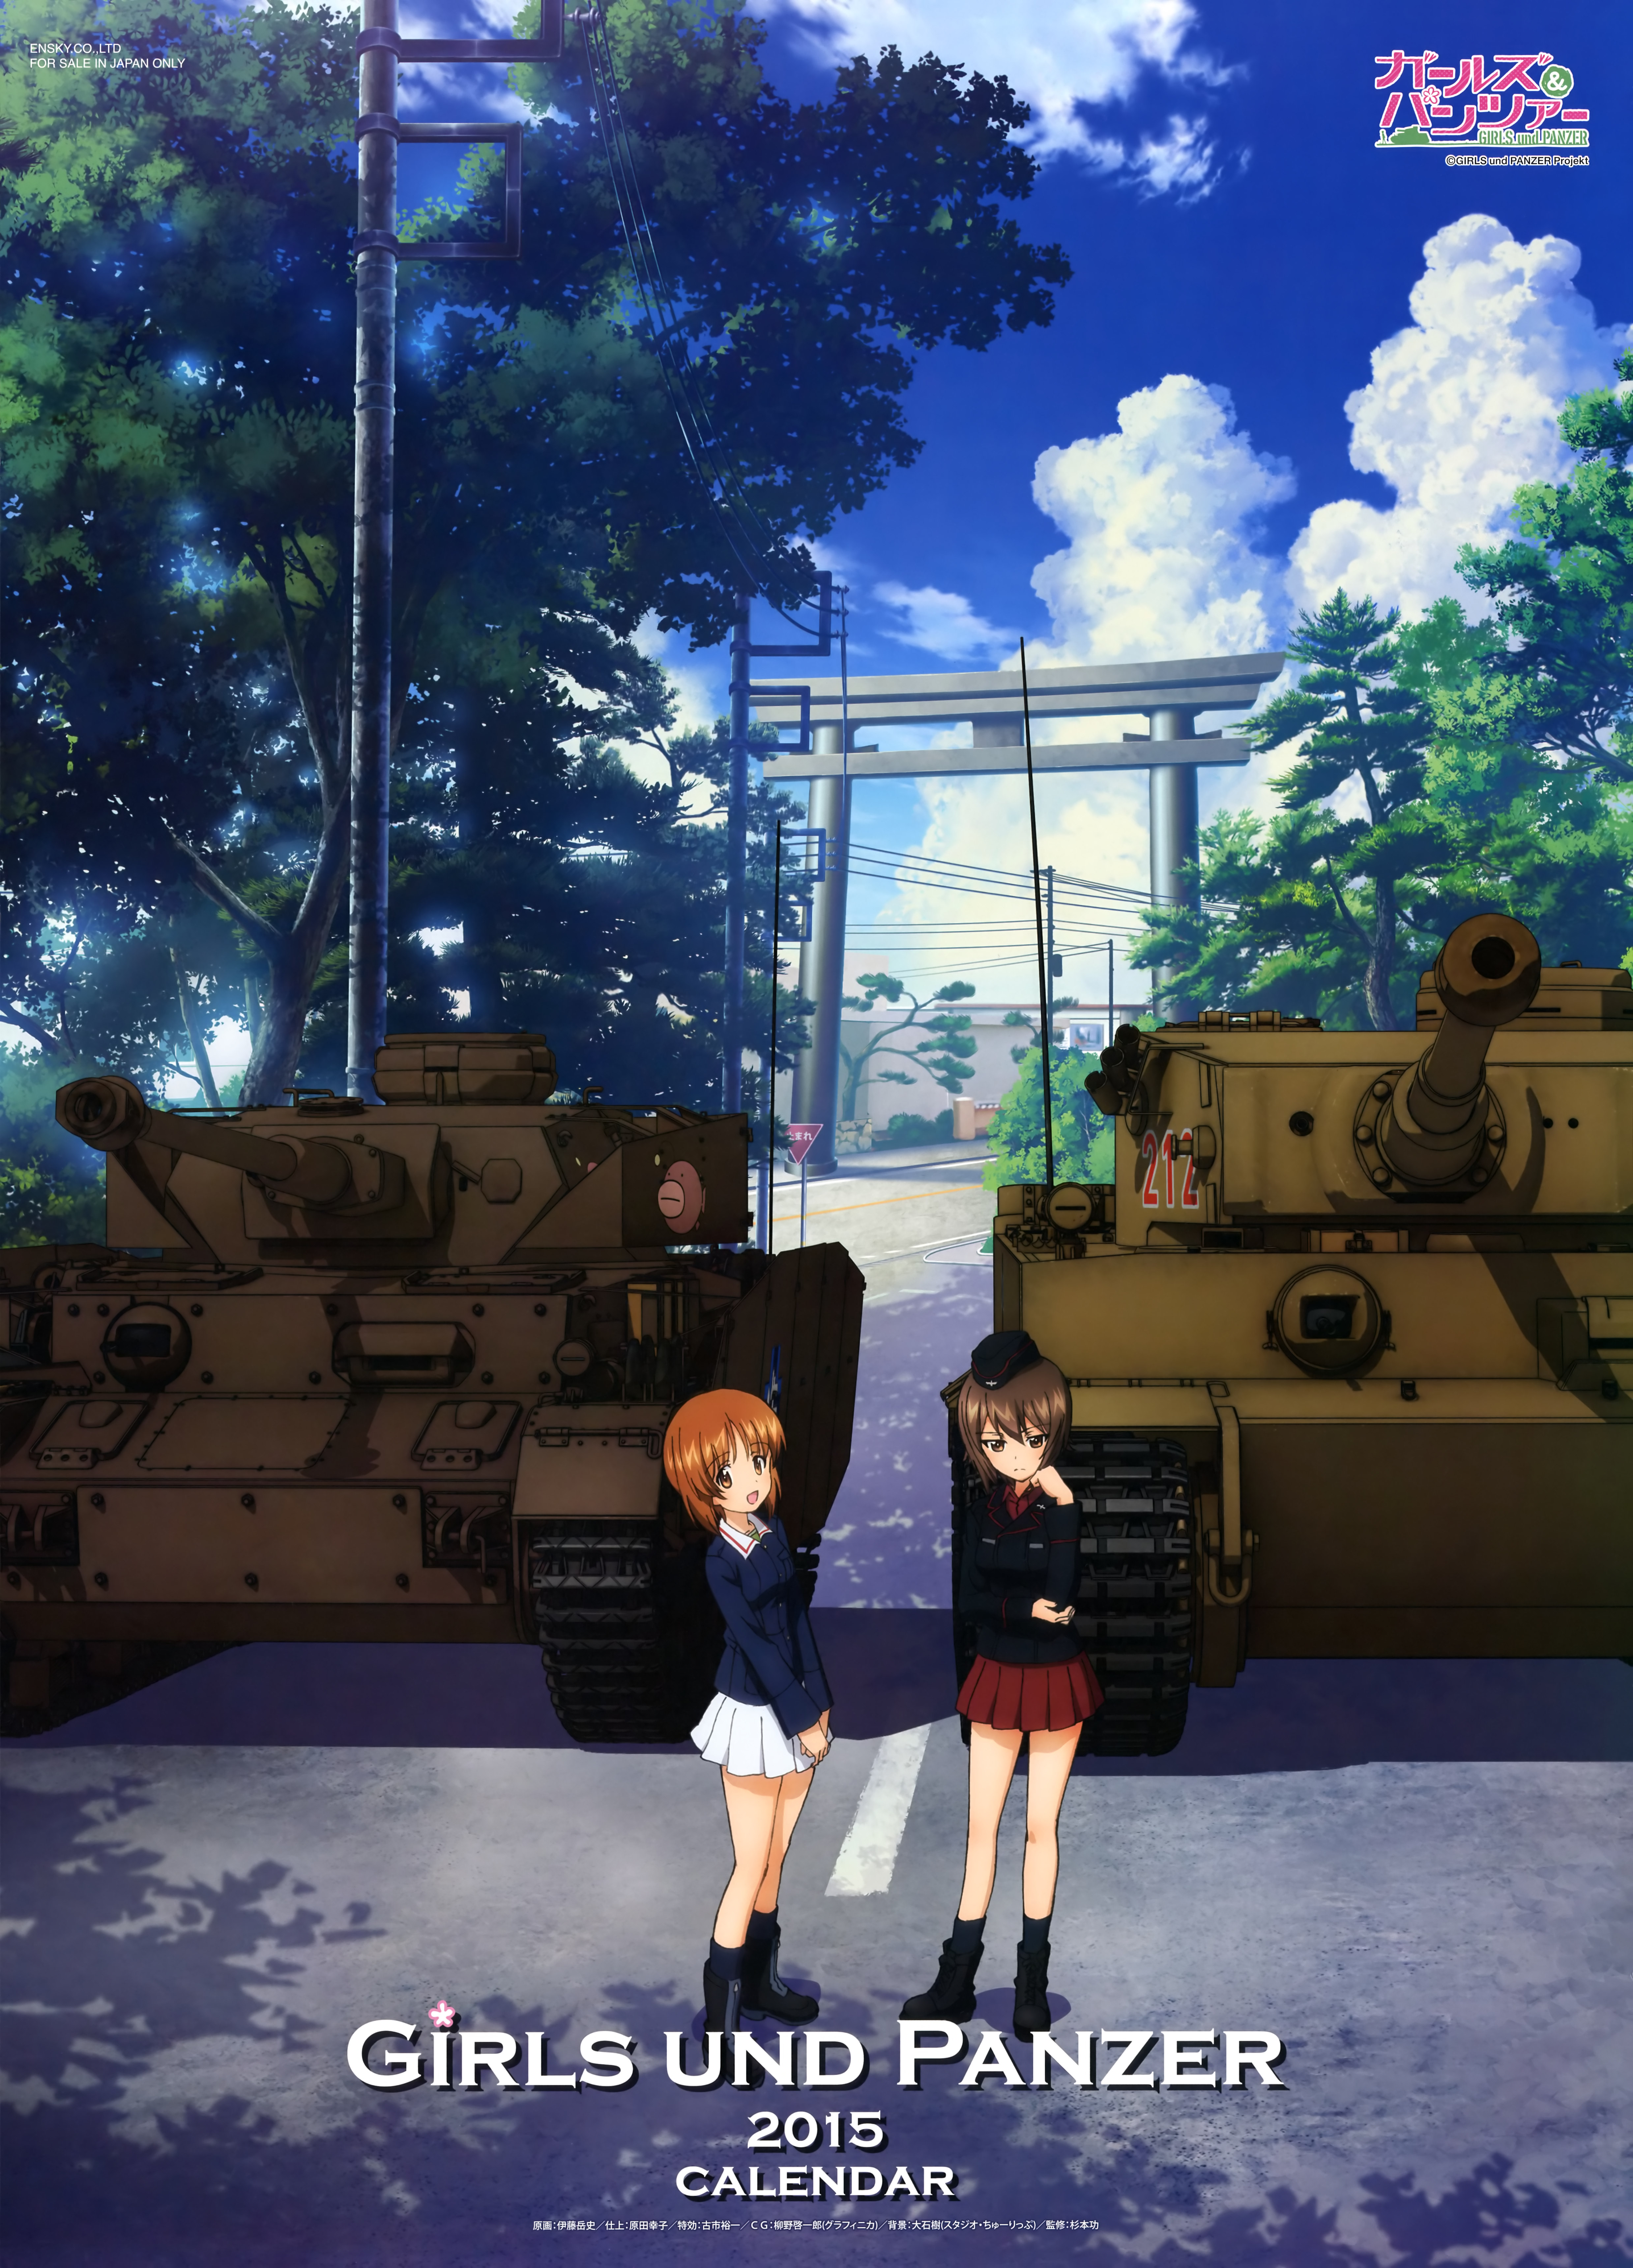 Girls und Panzer 2015 Calendar Previewed Haruhichan.com Gurapan calendar 1